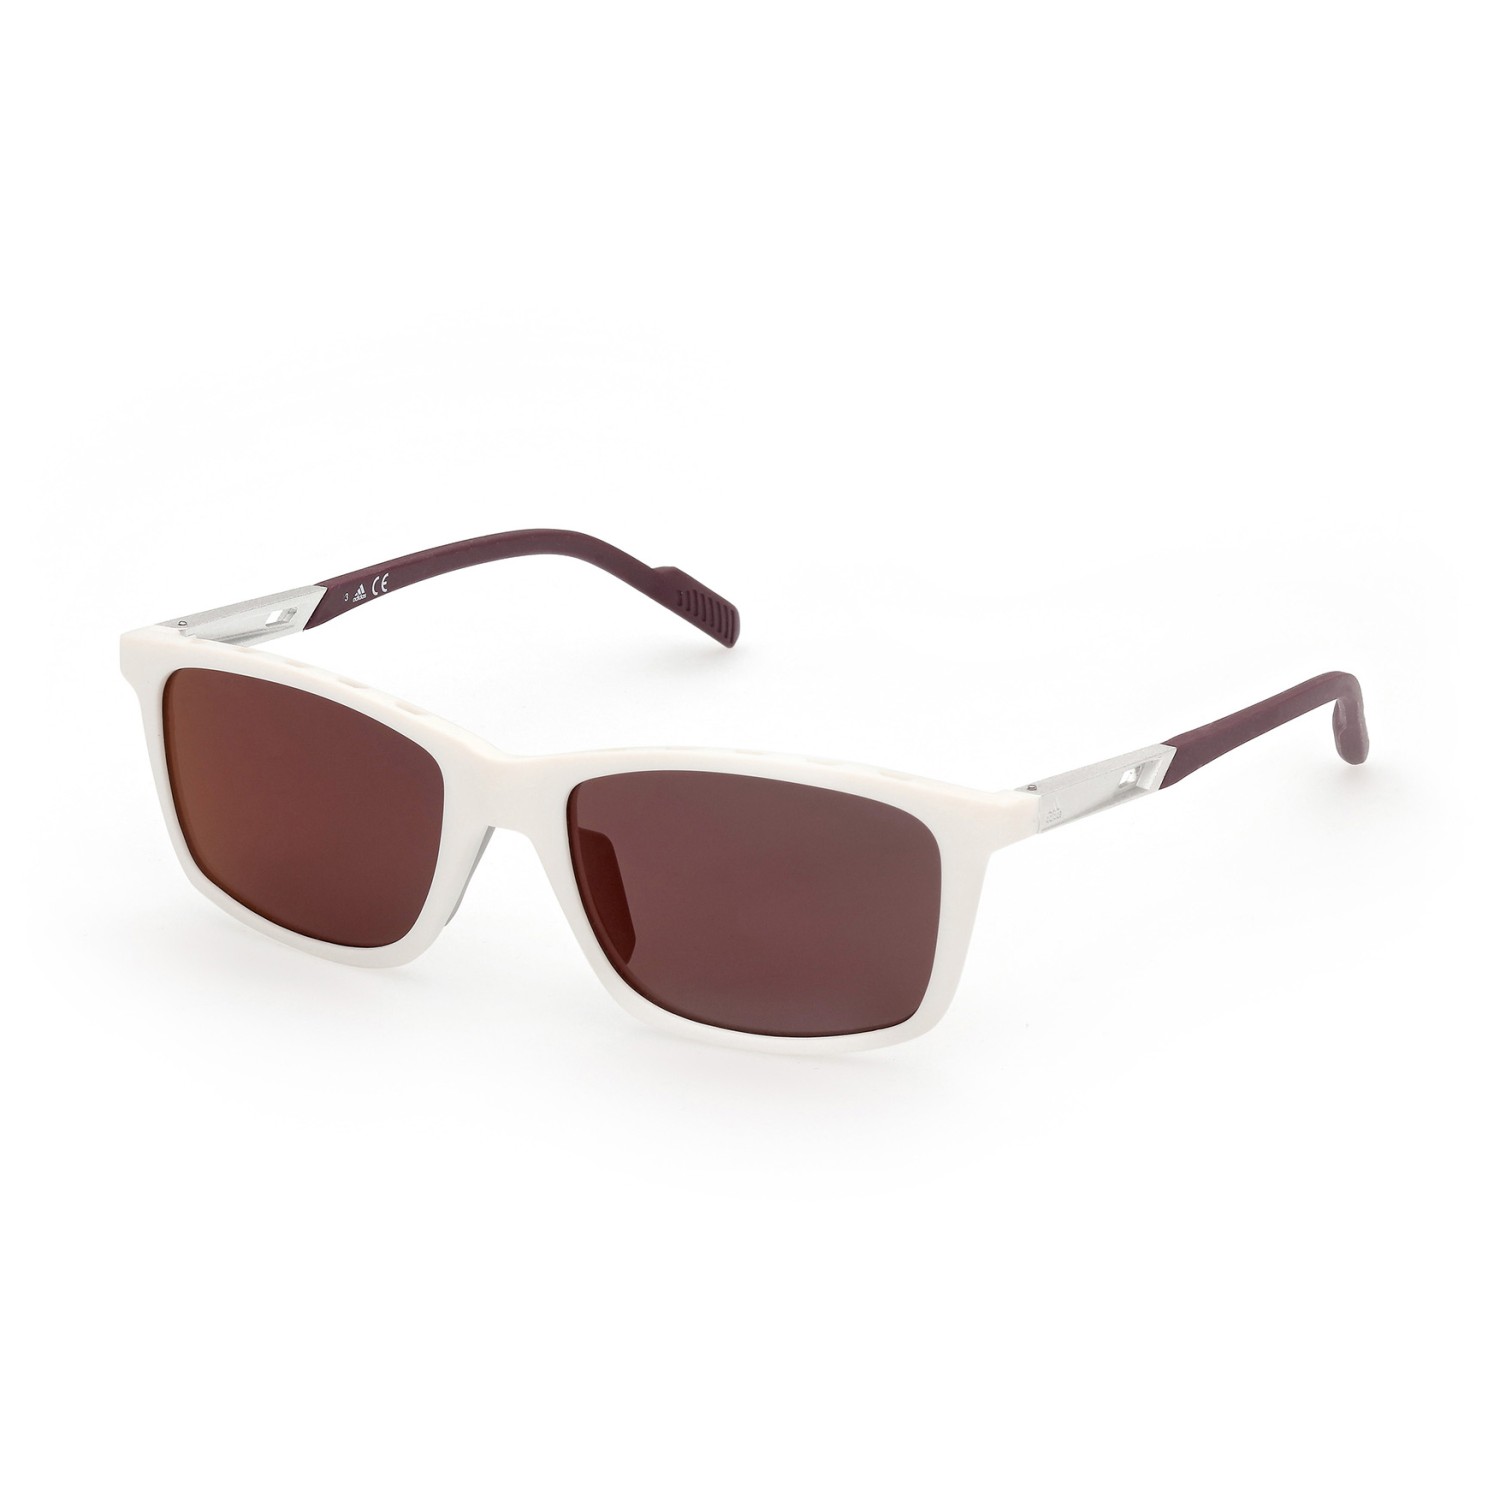 Солнцезащитные очки Adidas SP0052 Mirror Cat 3, белый солнцезащитные очки adidas sp0083 mirror cat 3 цвет crystal